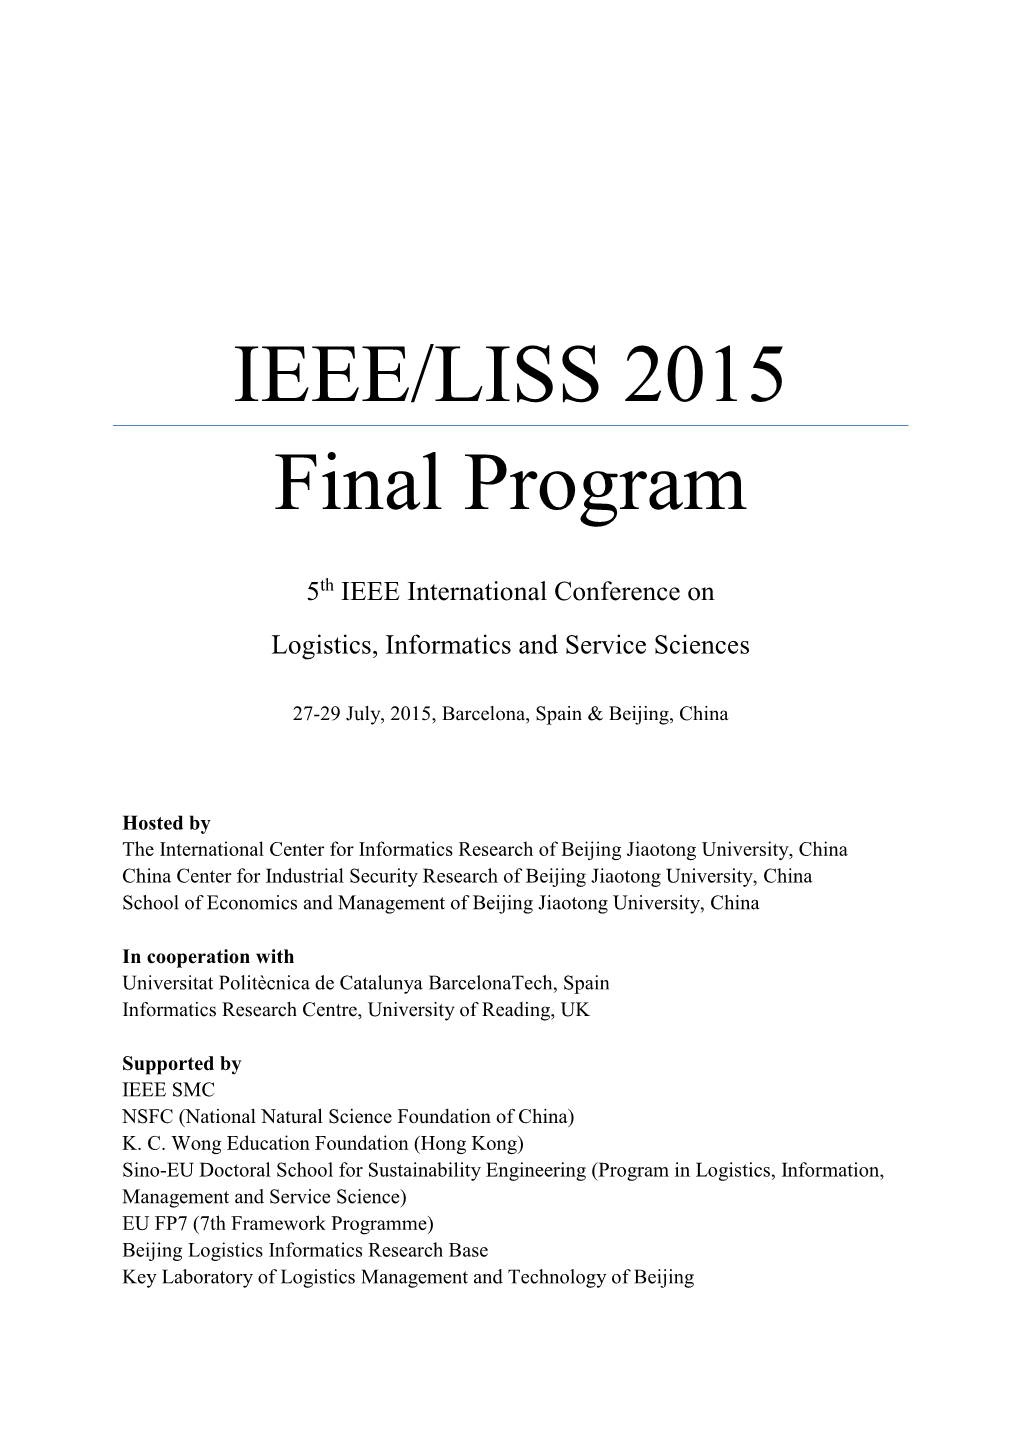 IEEE/LISS 2015 Final Program